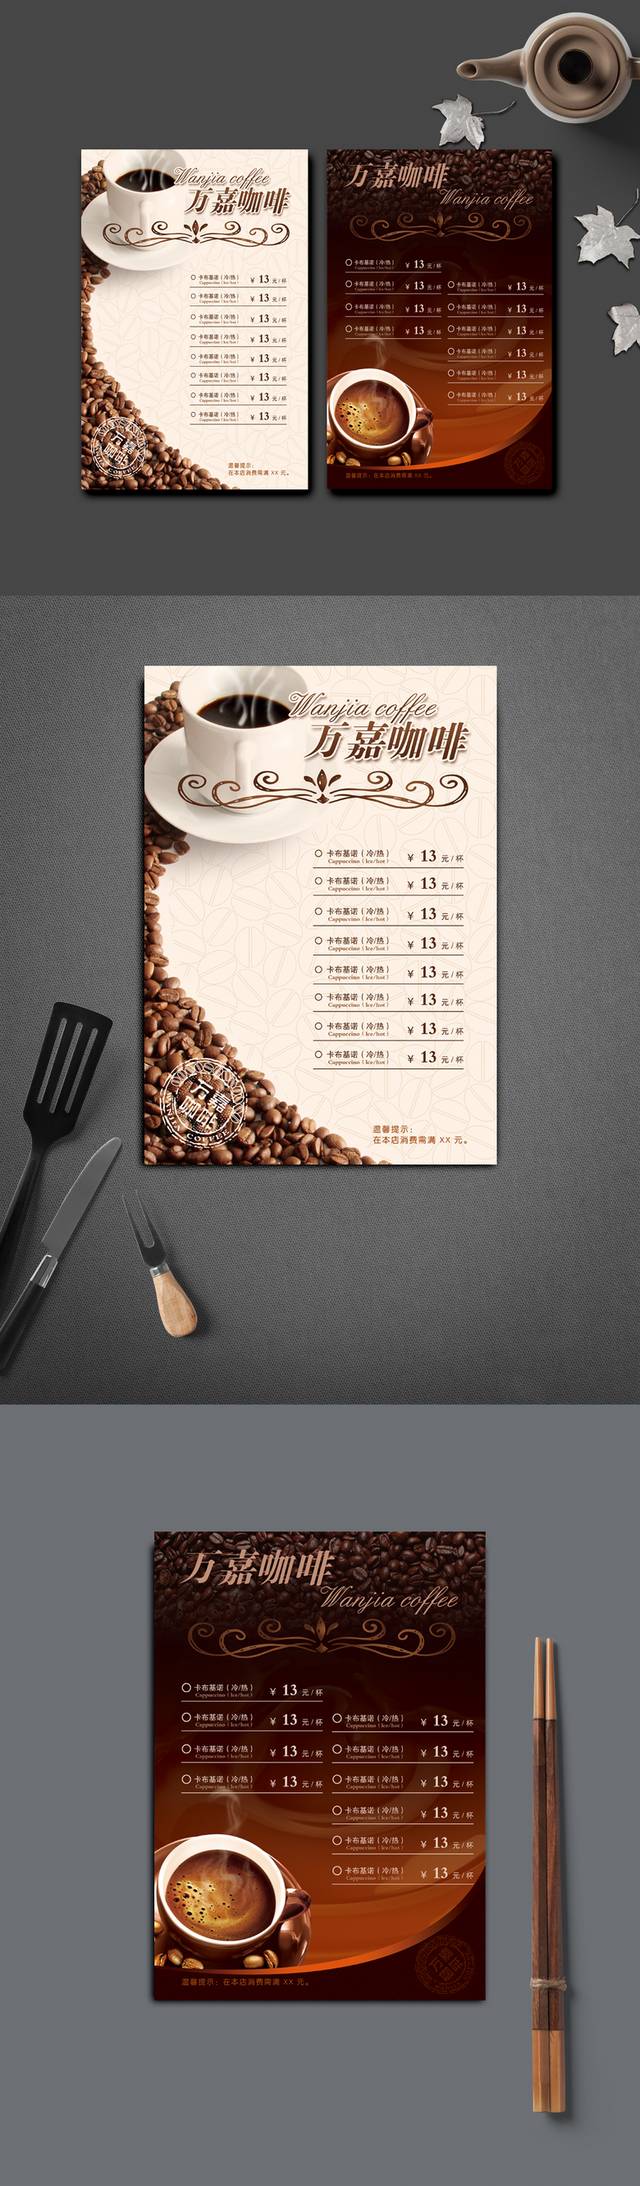 创意咖啡店价目表模板